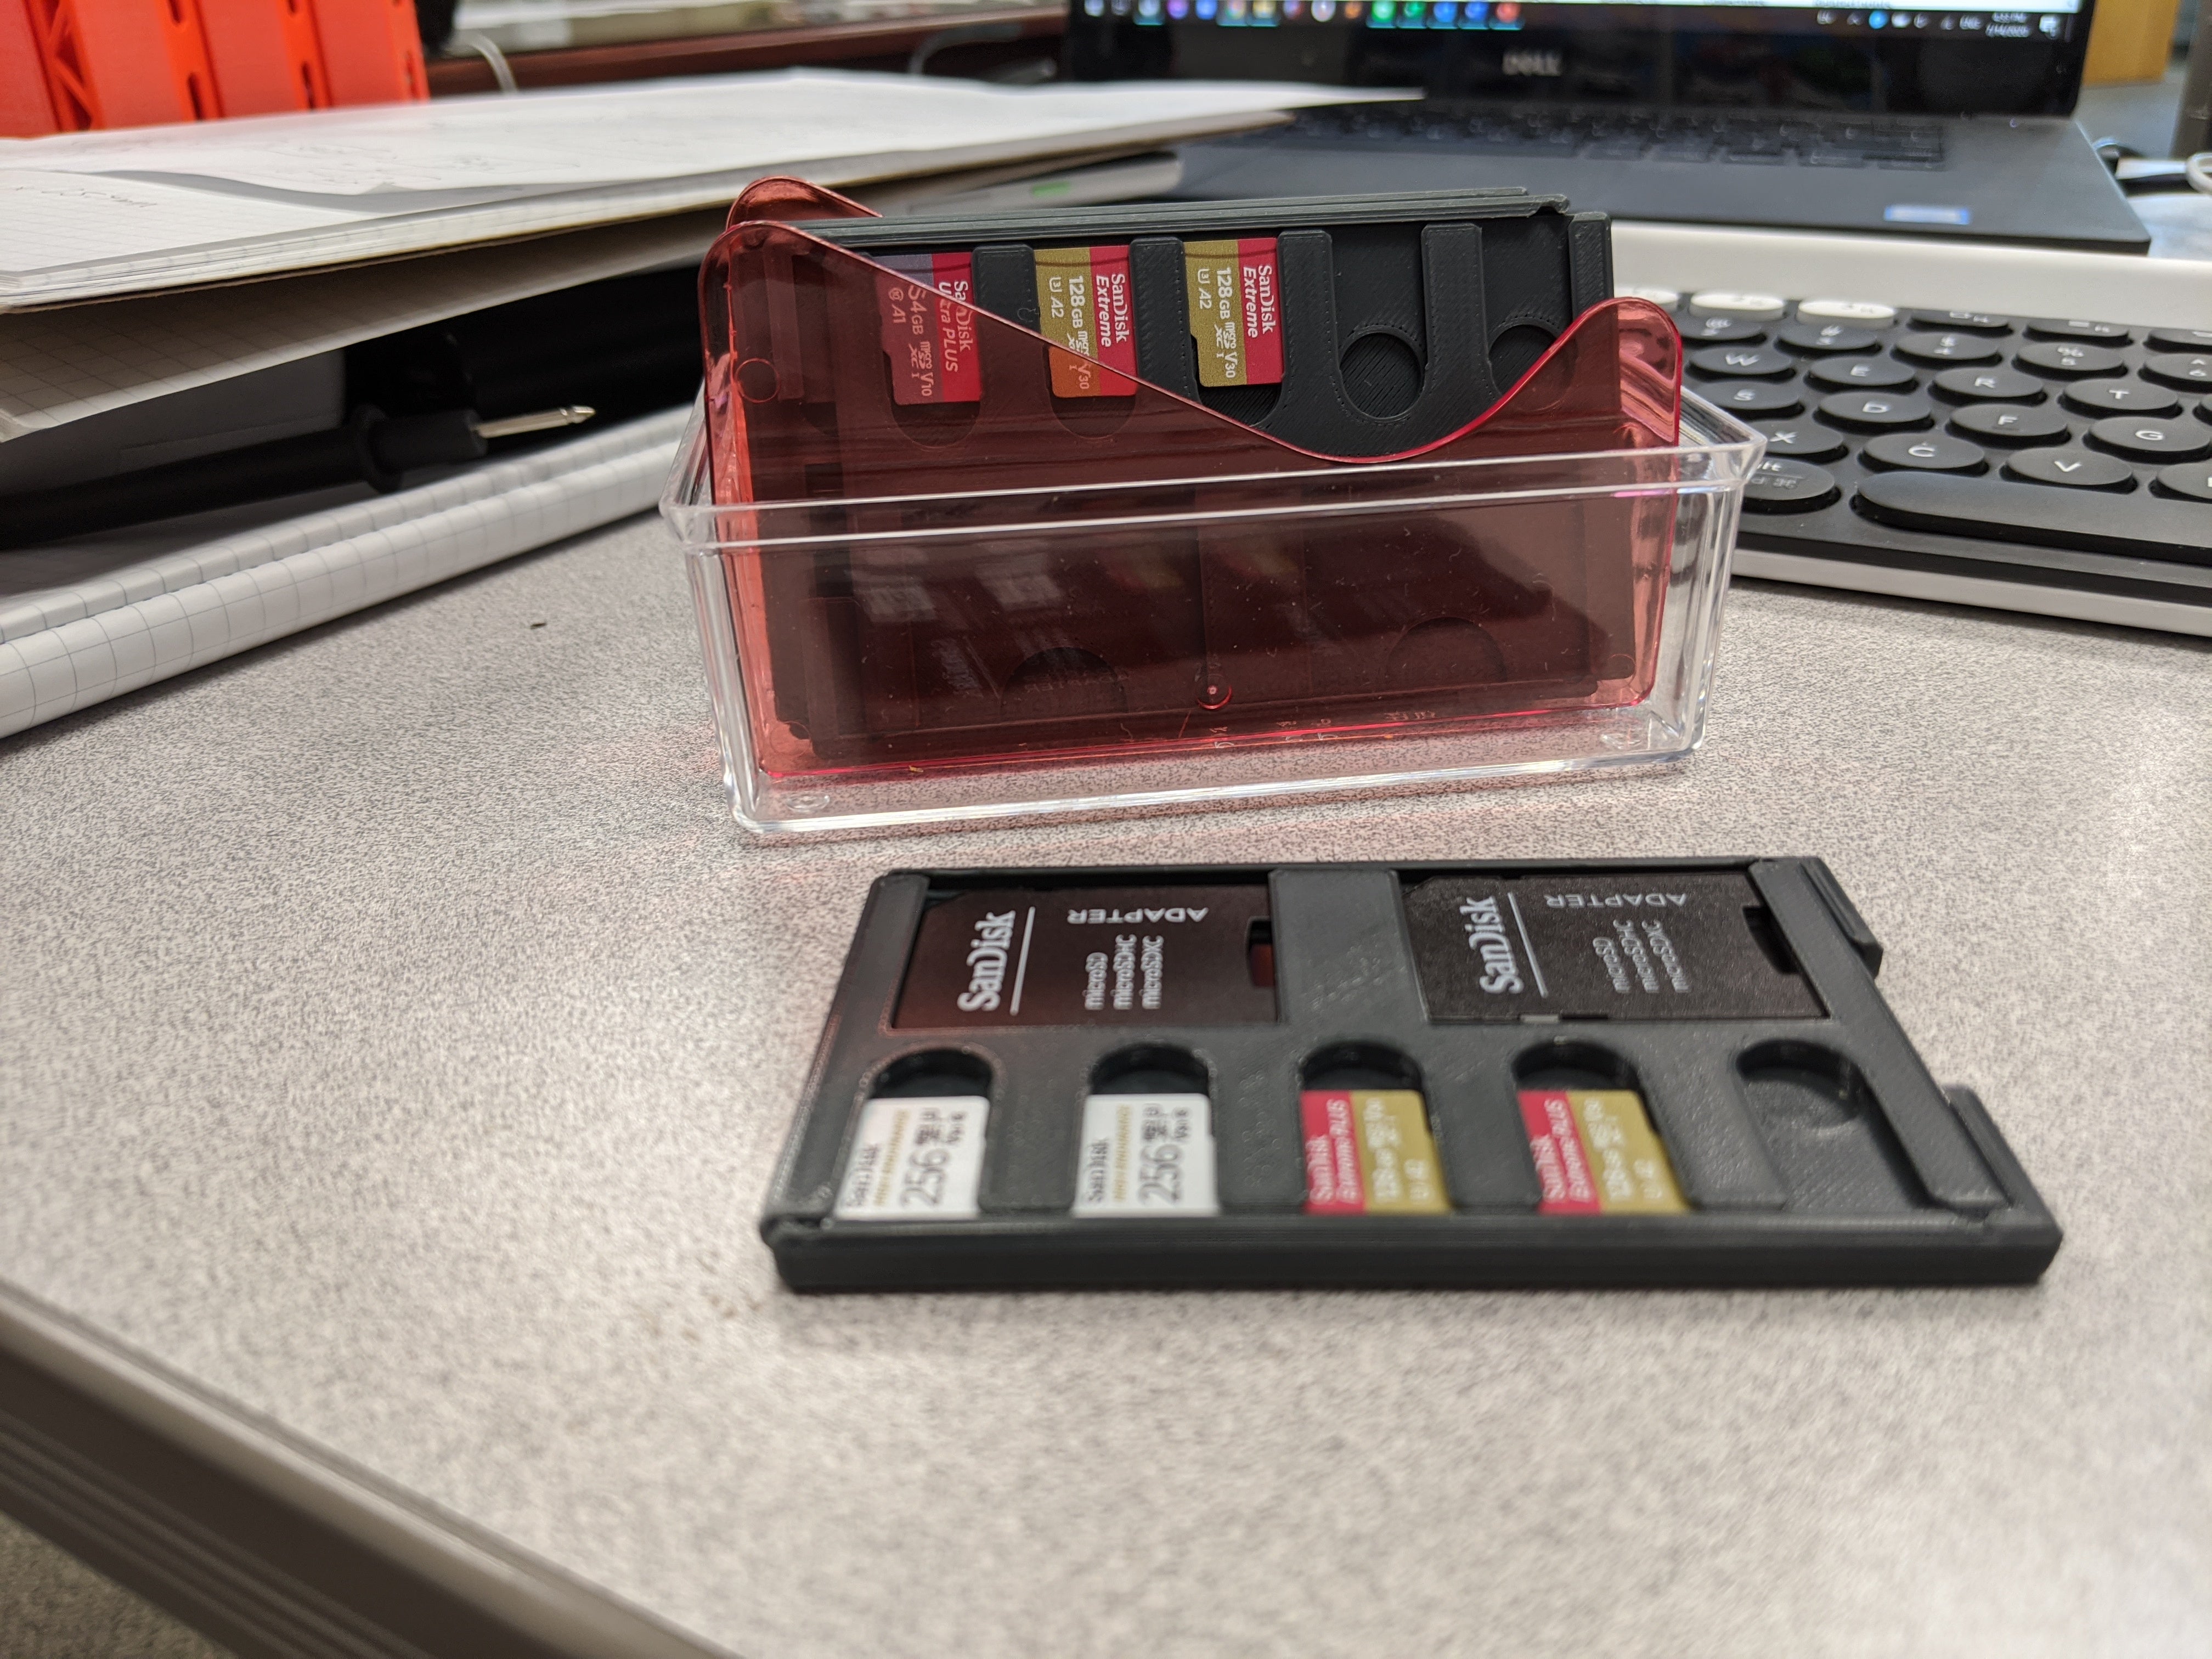 Estuche para tarjetas SD/MicroSD del tamaño de una tarjeta de crédito